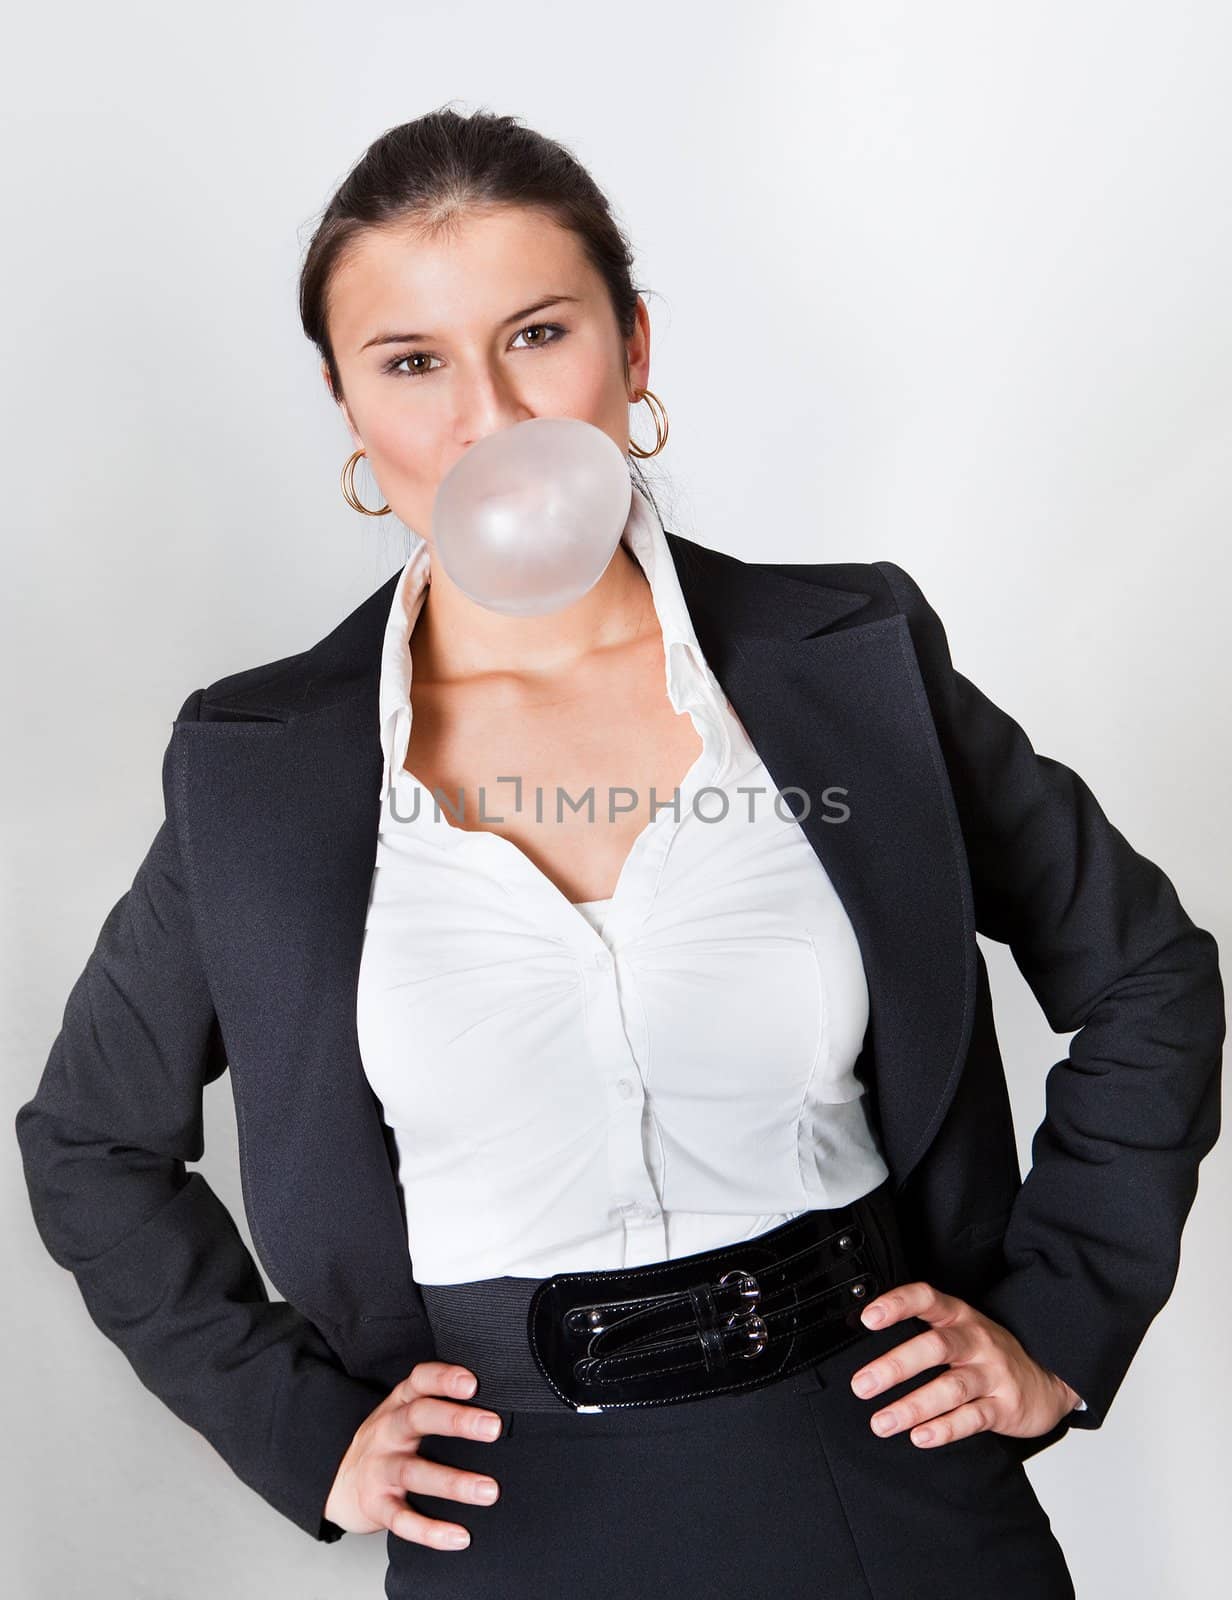 Businesswoman blowing bubblegum by AndreyPopov